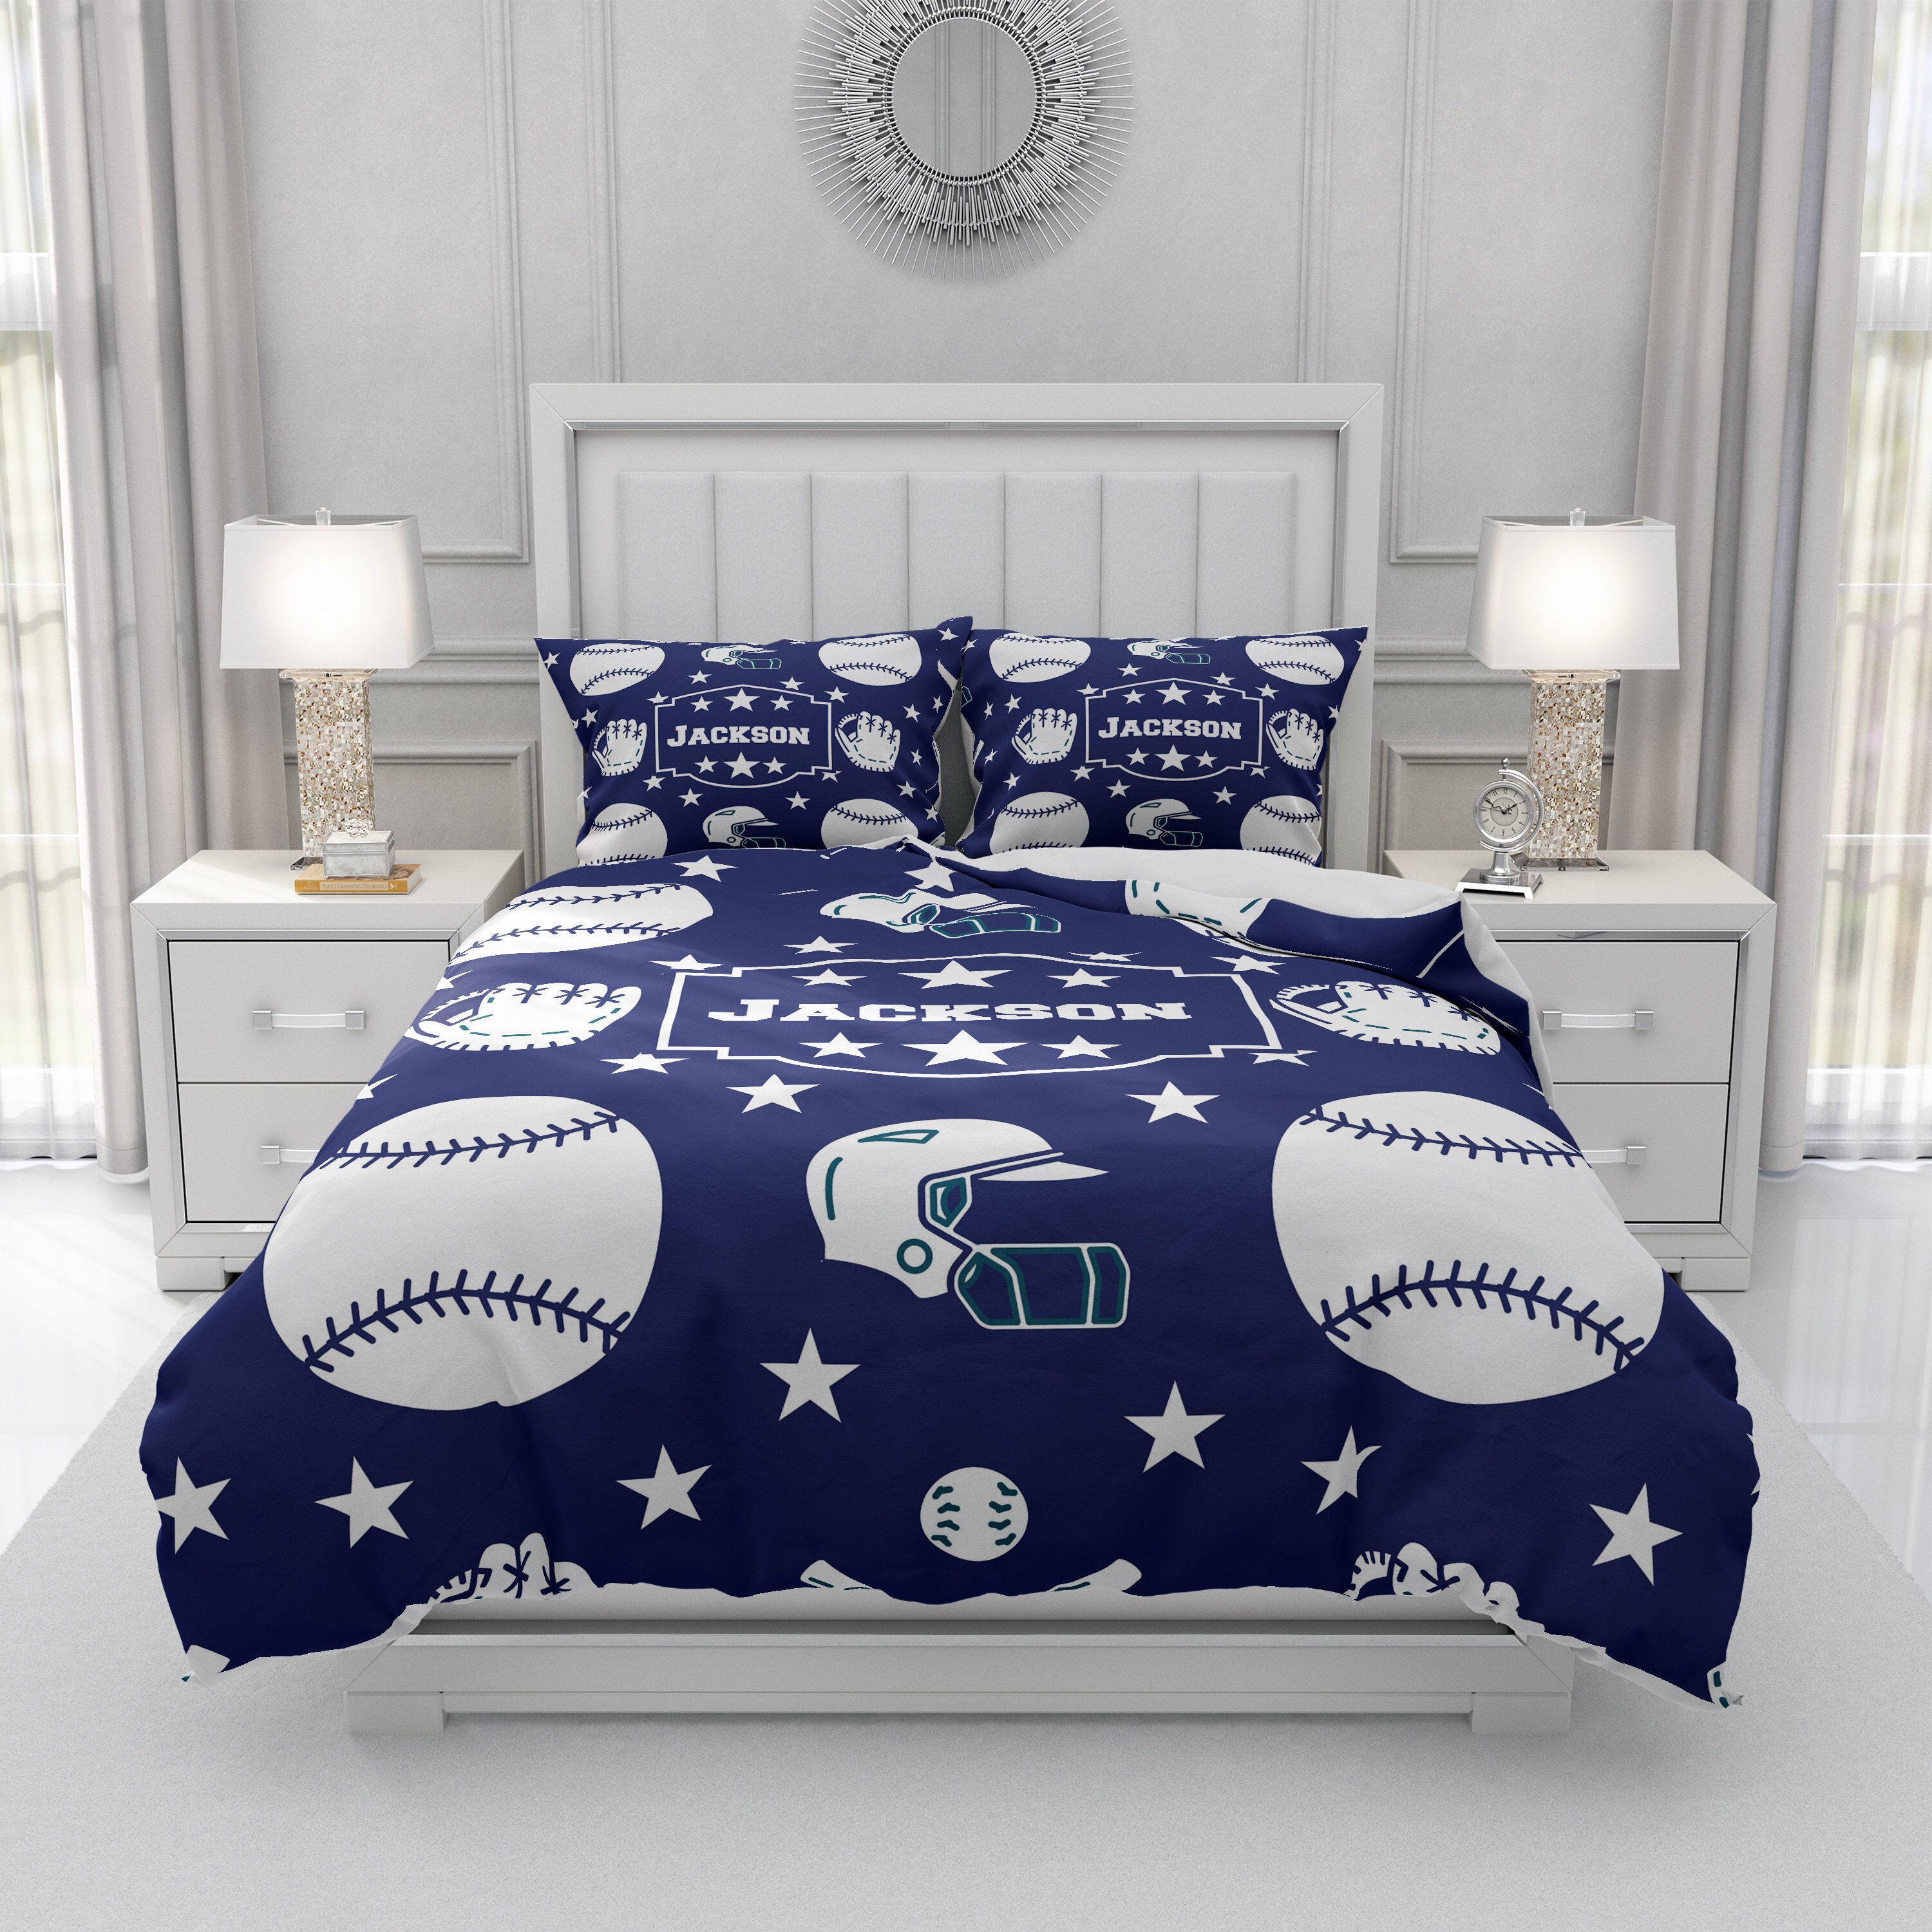 Personalized Baseball Comforter Duvet Cover Pillow Shams